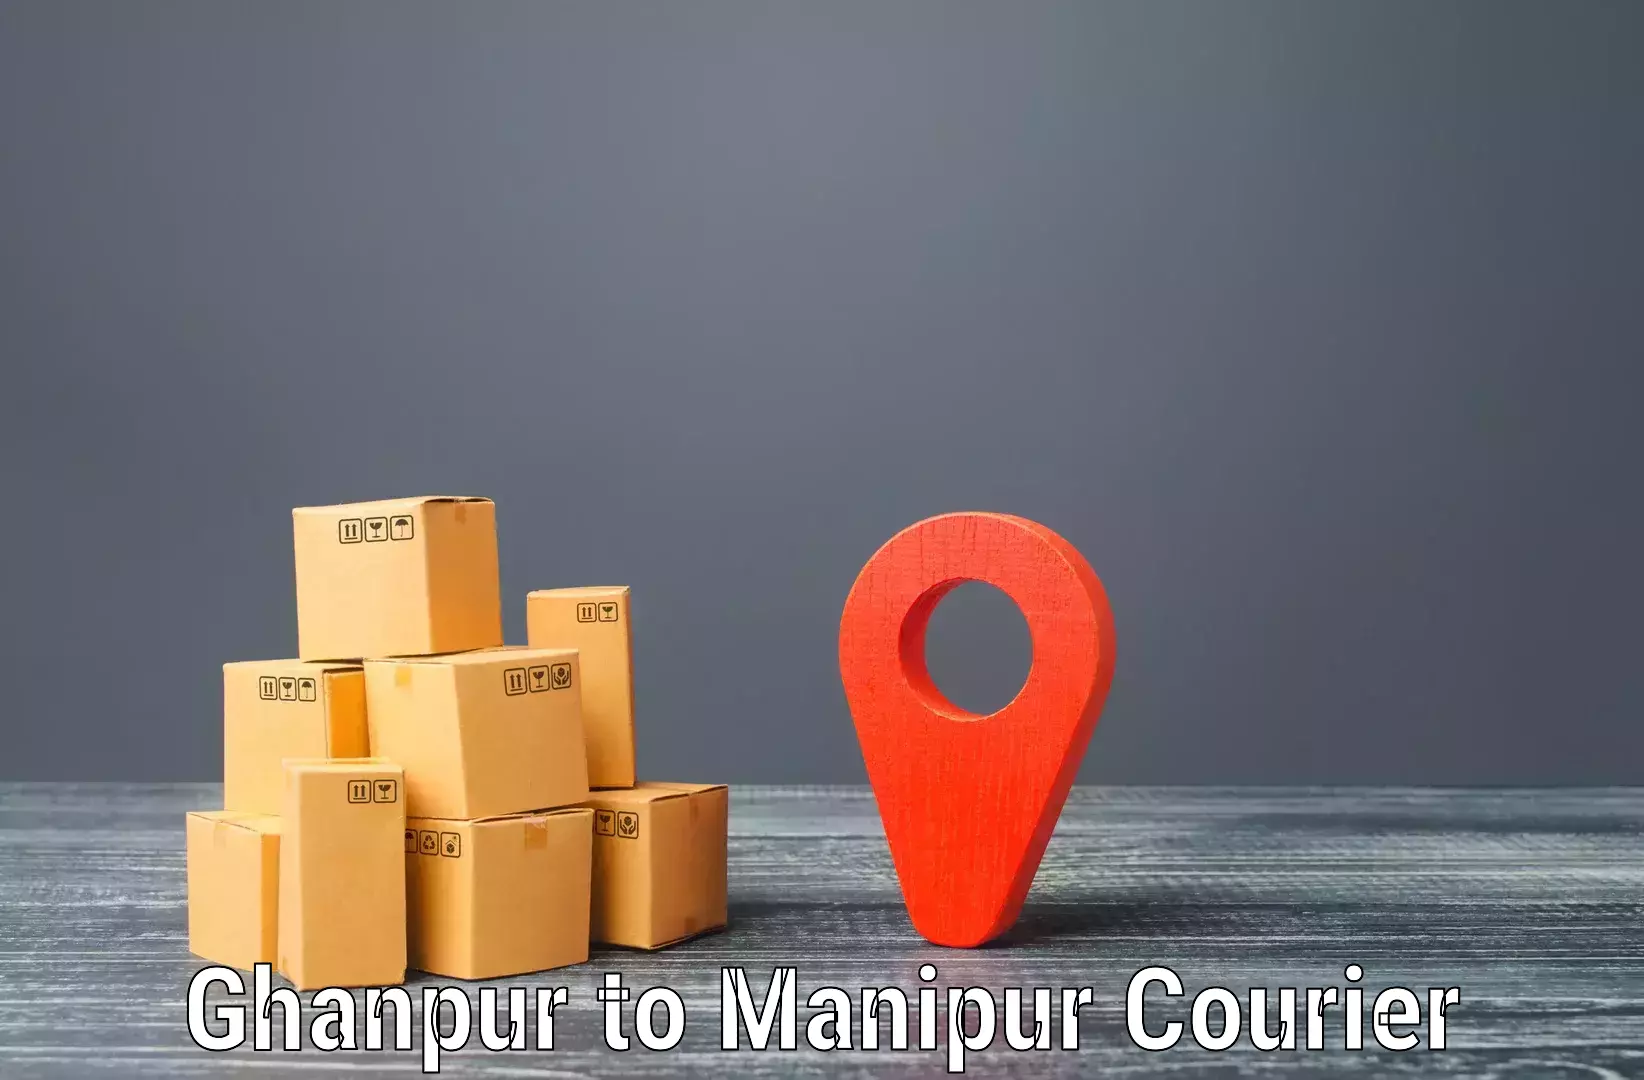 Regular parcel service Ghanpur to Ukhrul